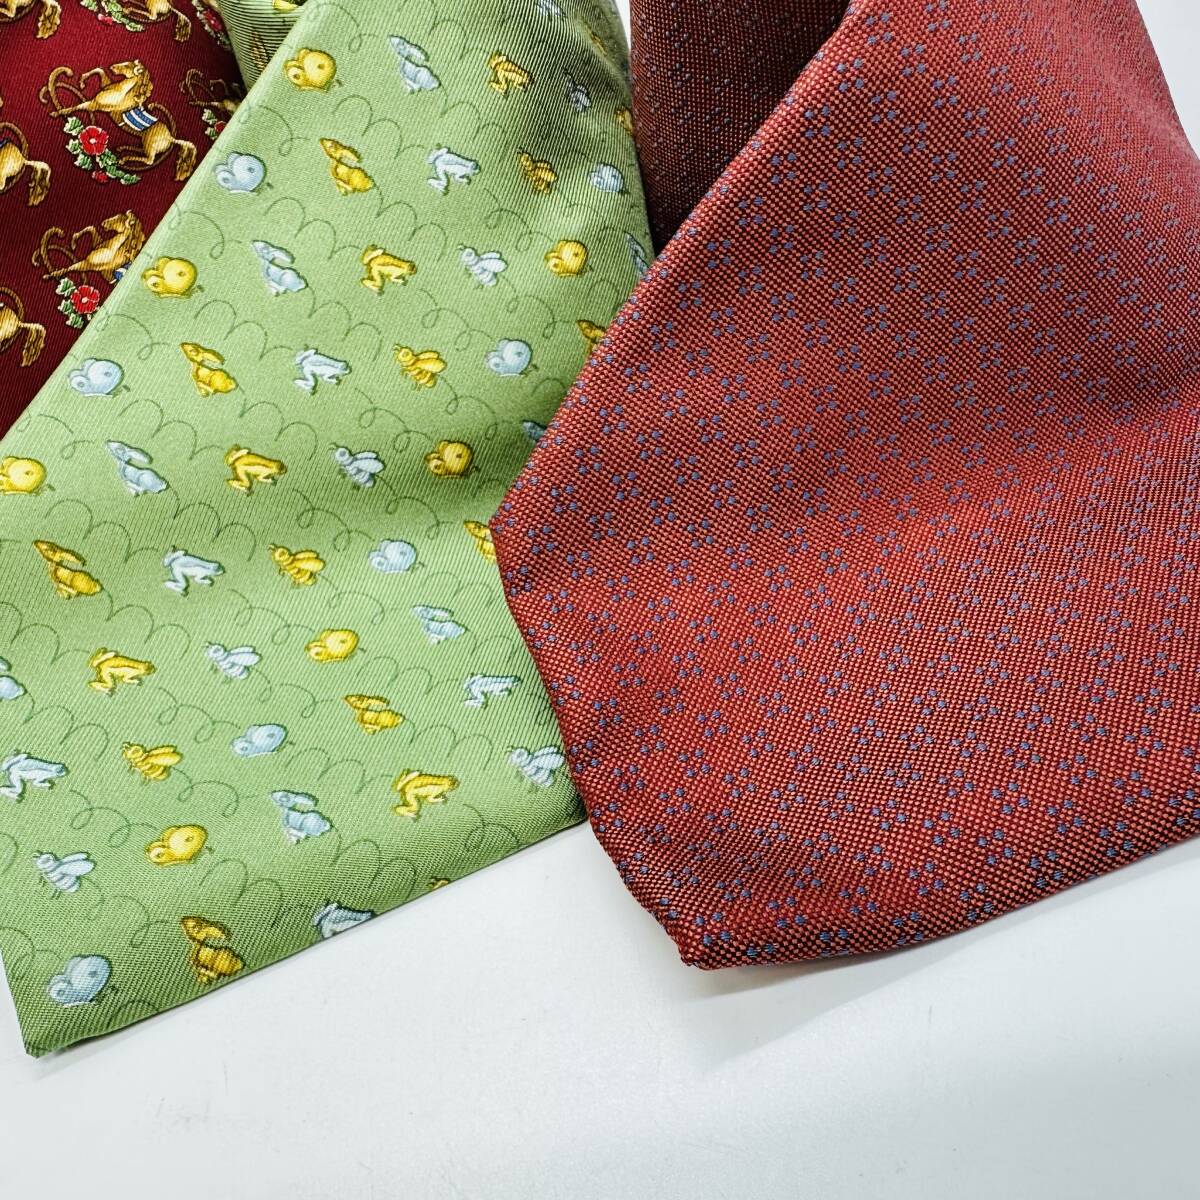  Ferragamo галстук суммировать Ferragamo Burberrys 1 иен лот 4 шт. комплект мужской б/у одежда высокий бренд текущее состояние товар Bubble симпатичный 15903